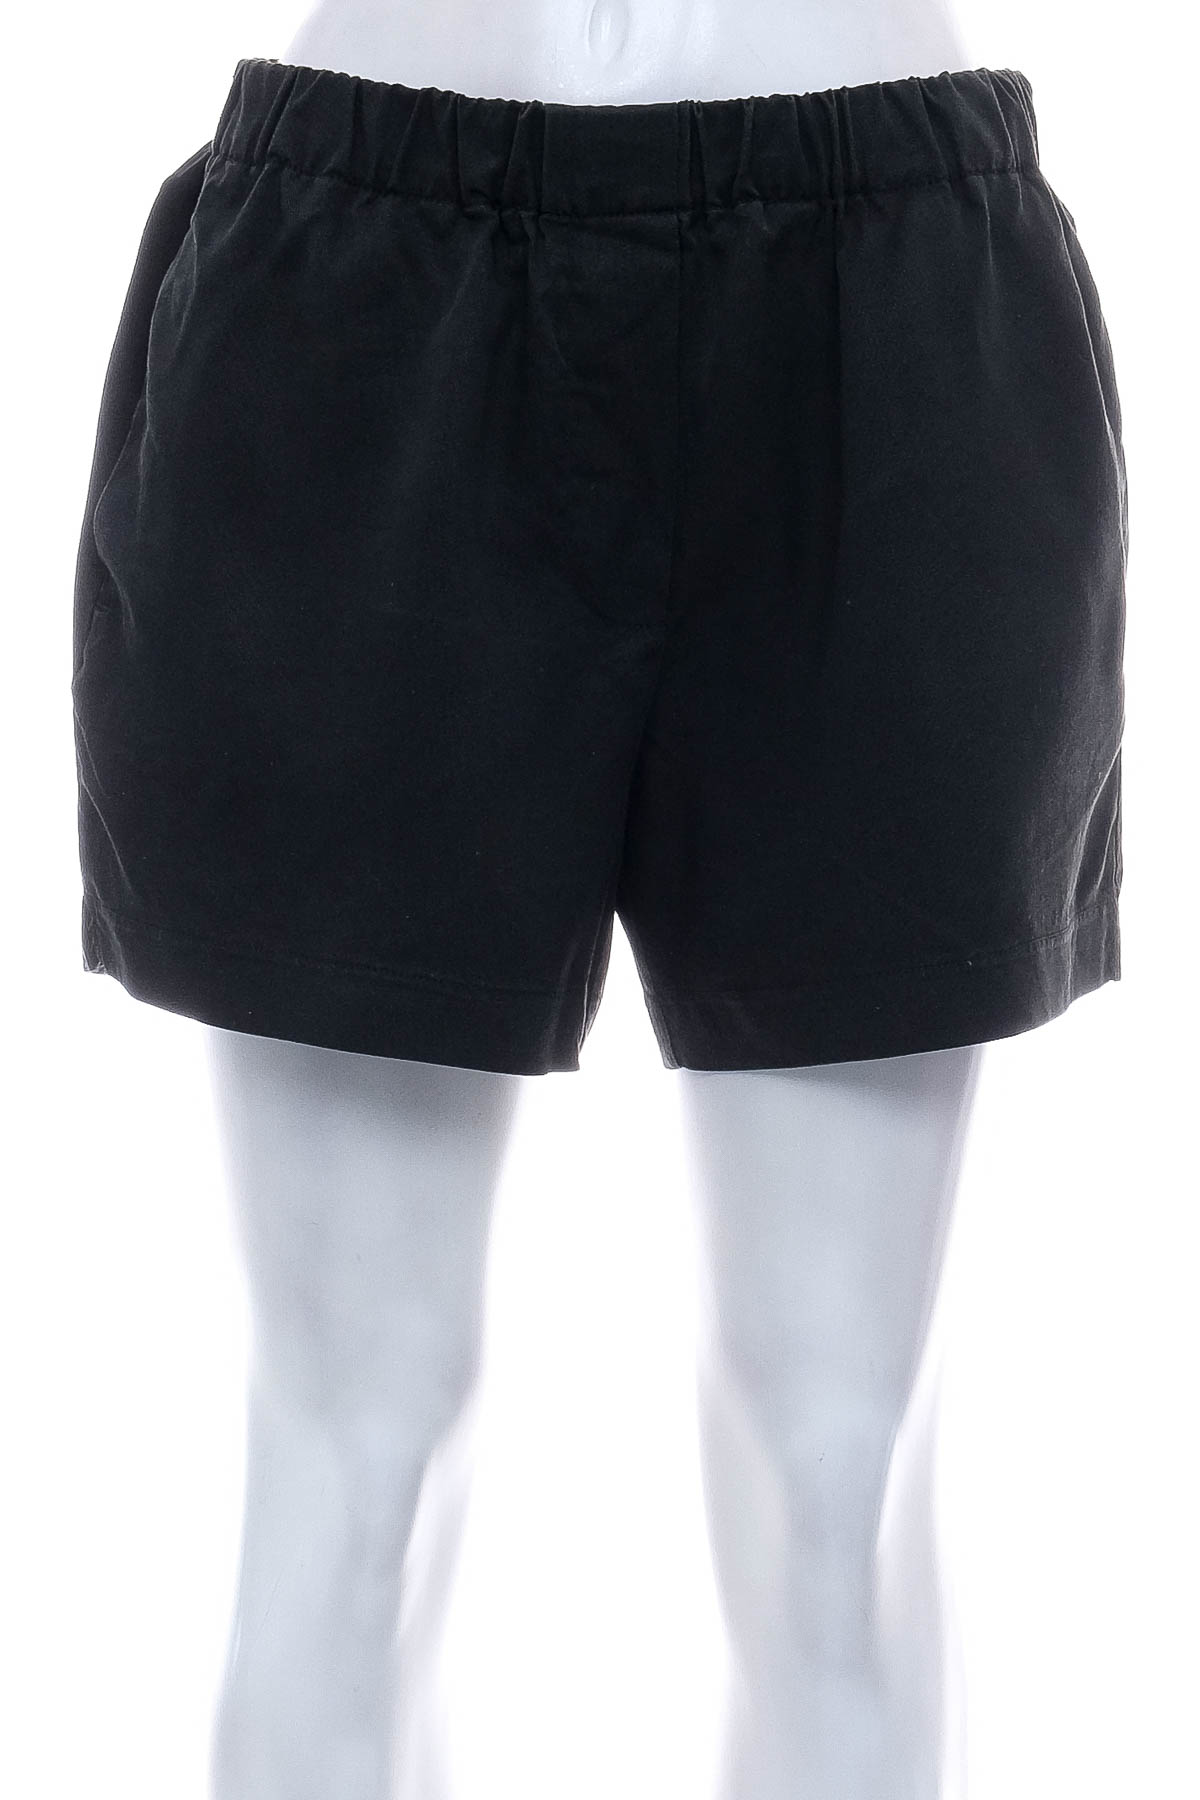 Female shorts - SISSY - BOY - 0